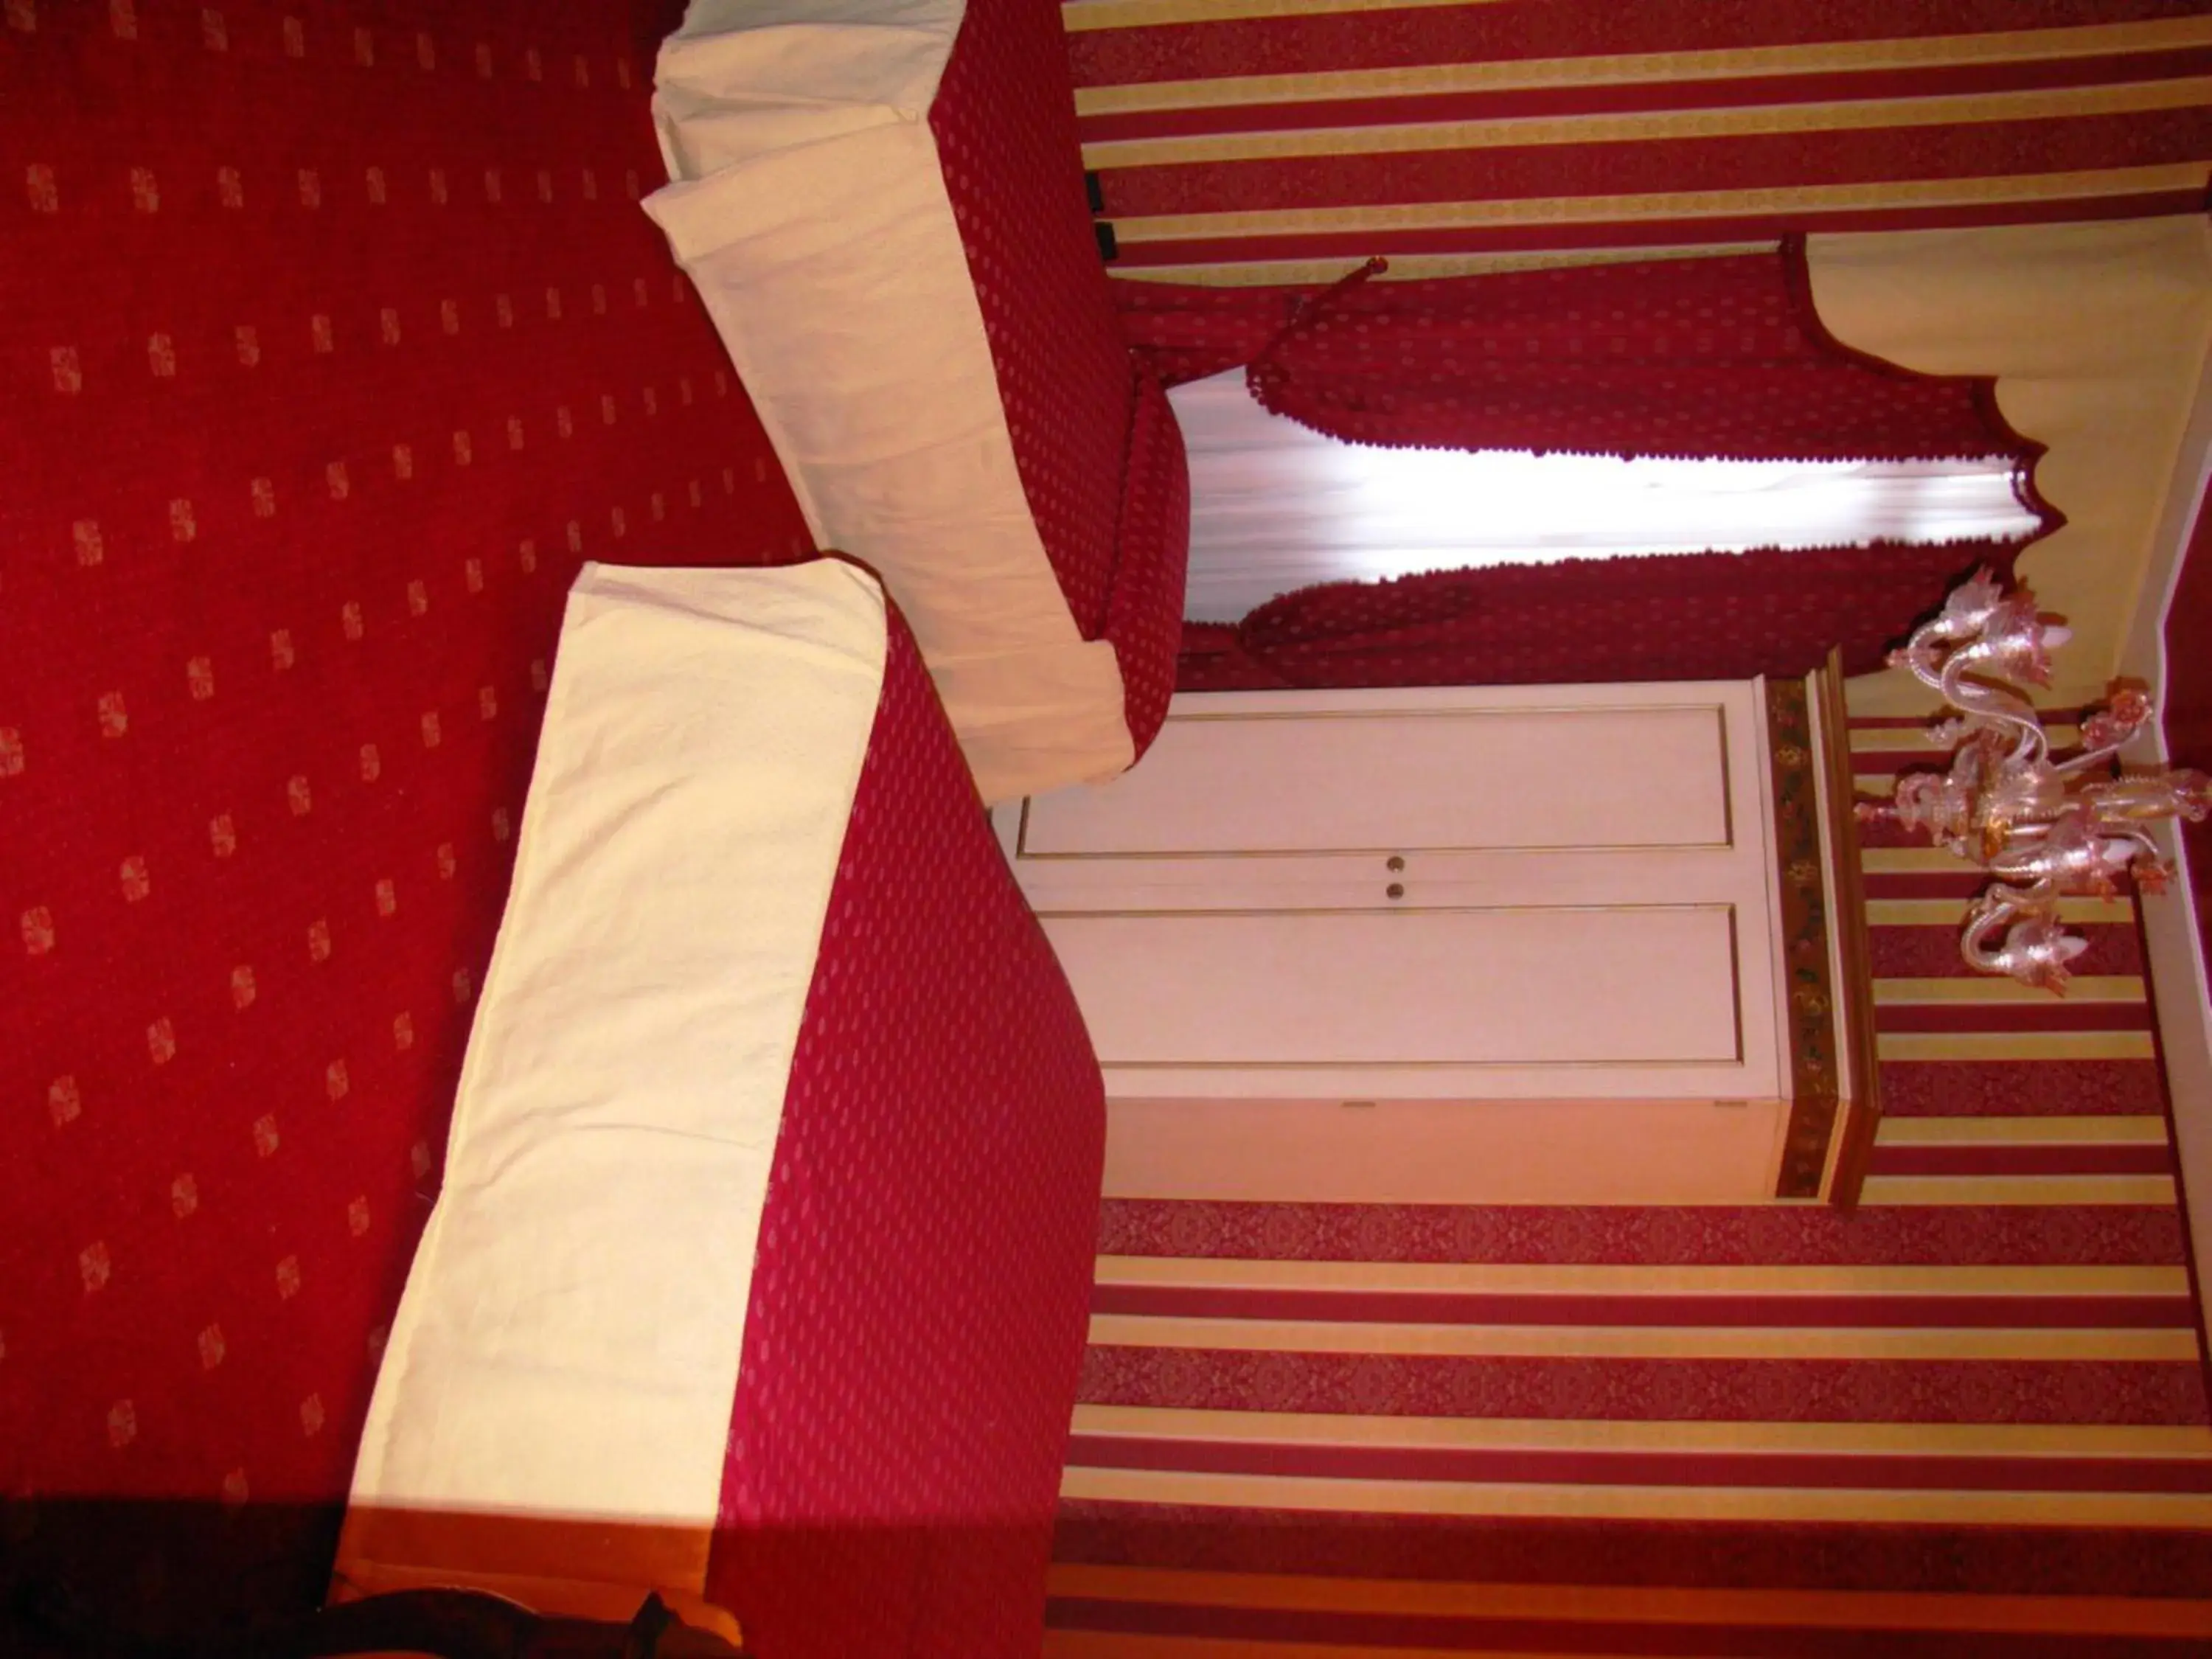 Bed in Hotel Belle Epoque